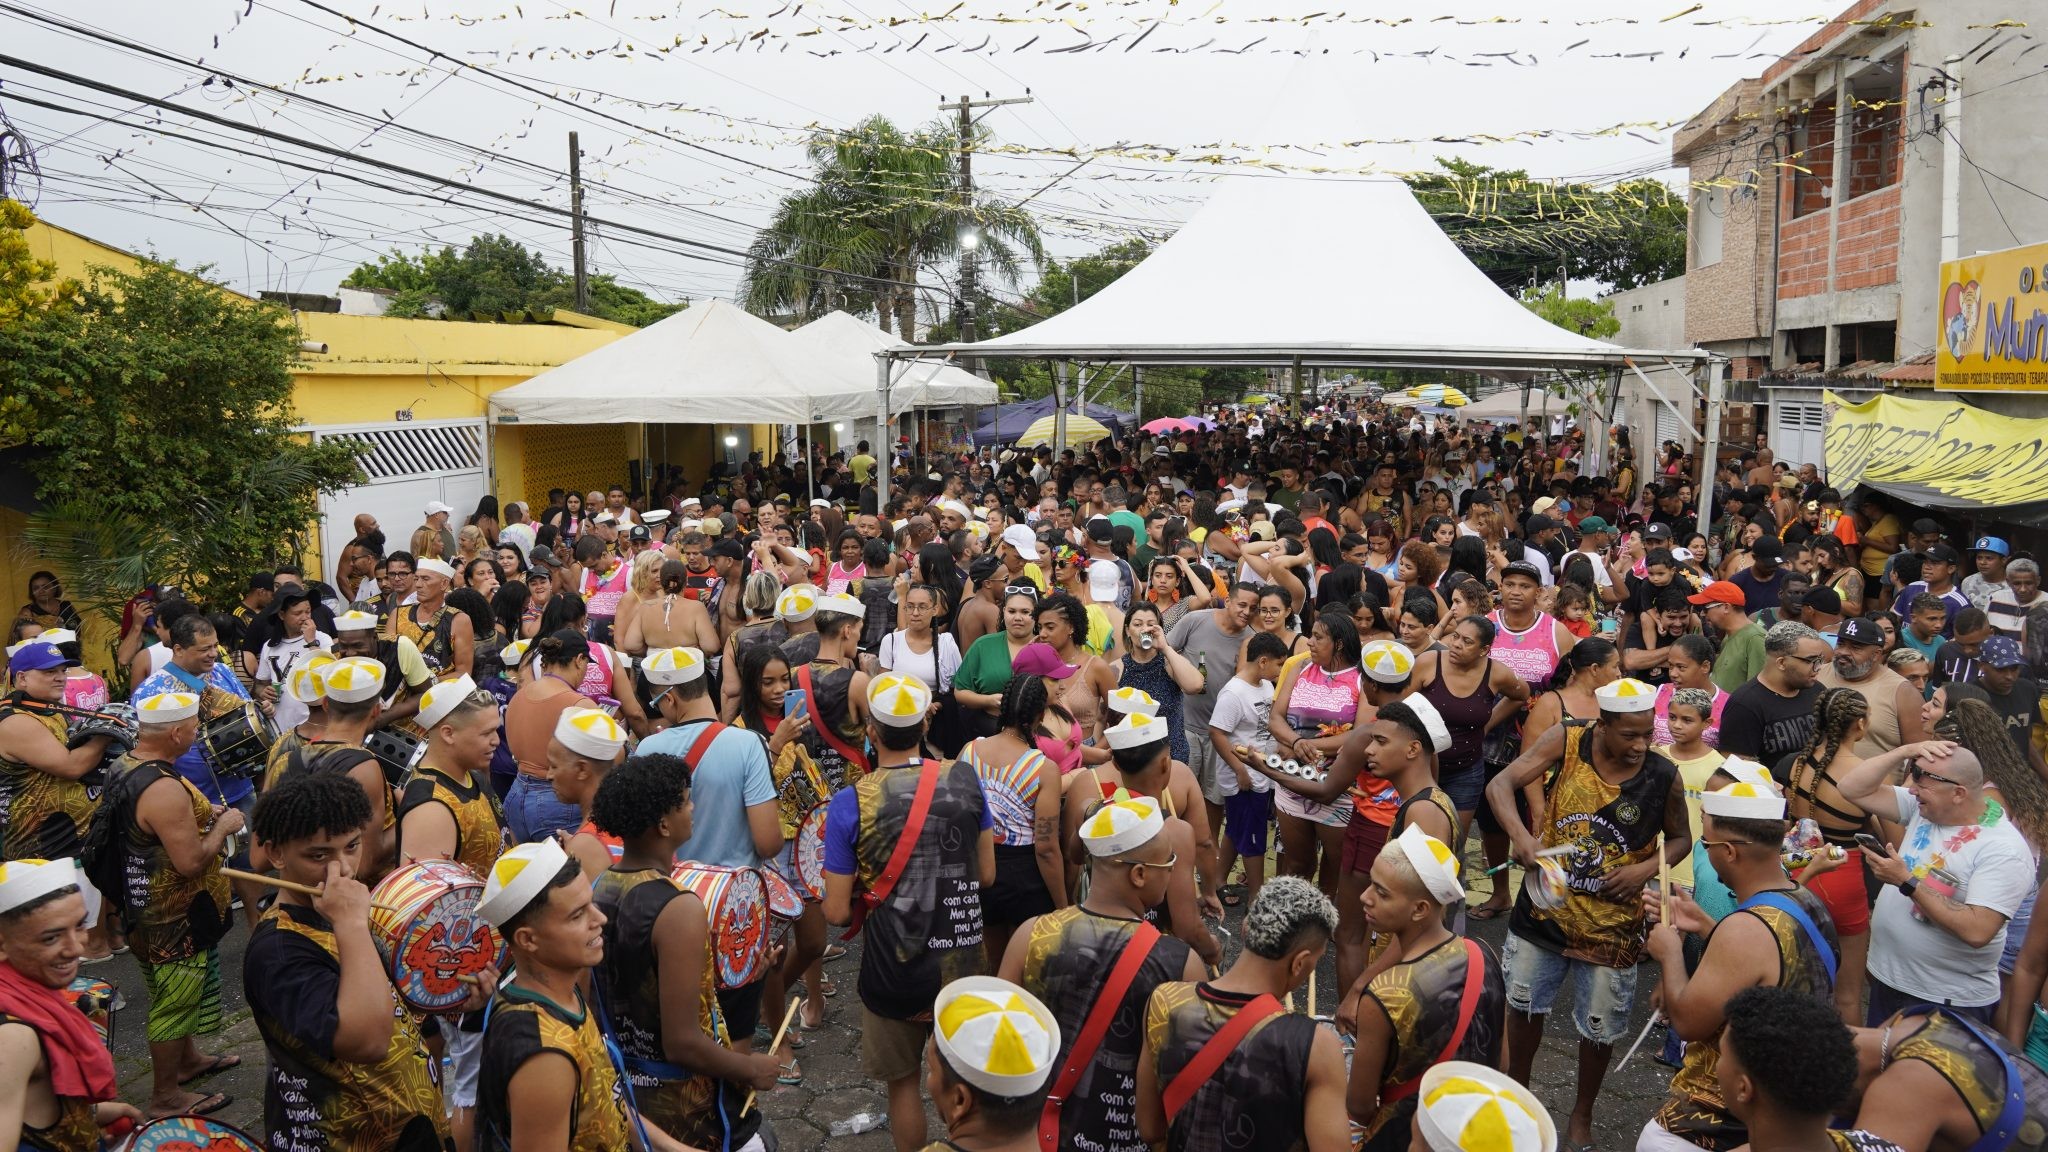 Blocos de Carnaval, Xande De Pilares, atrações circenses e feiras; g1 reúne eventos para curtir o fim de semana no litoral de SP